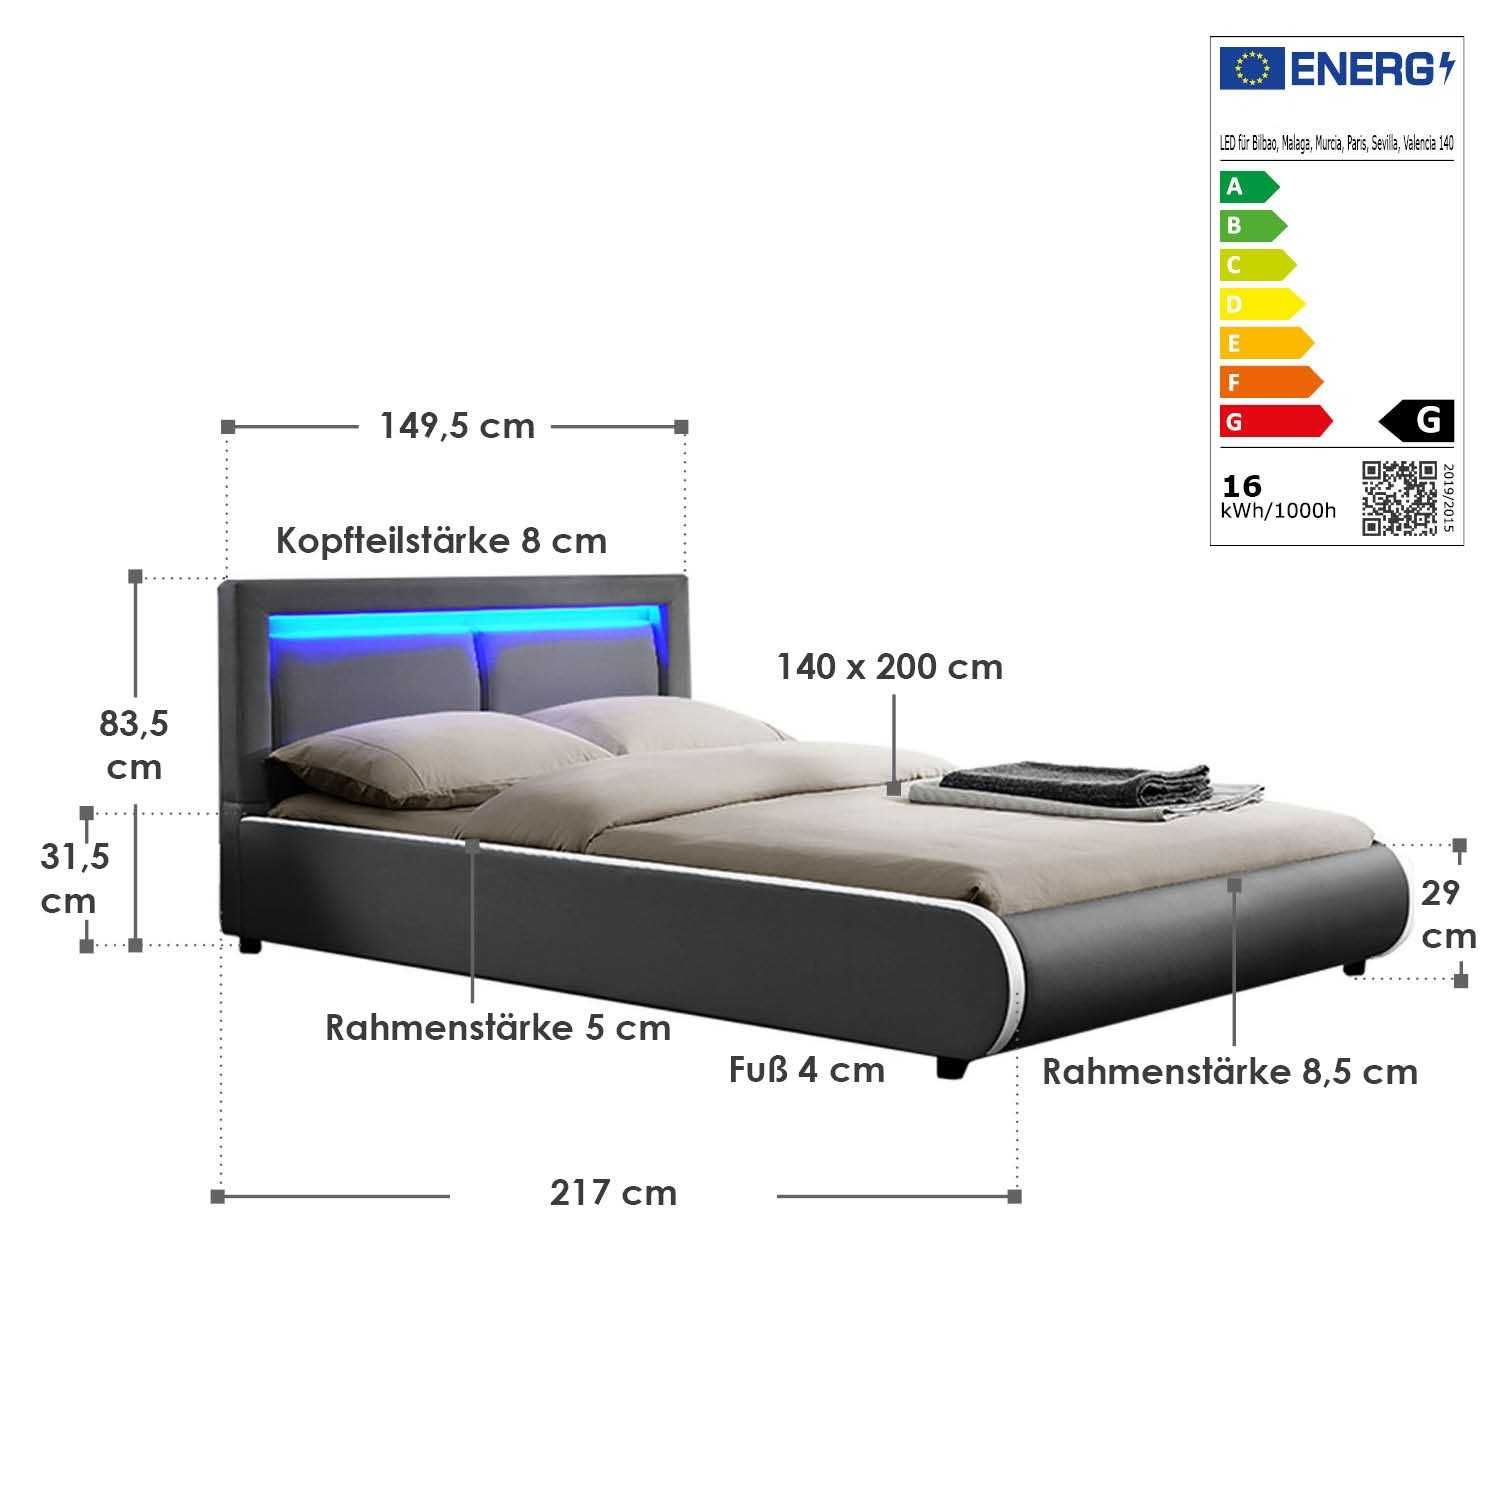 Кровать на пульт кожаная Murk 140х200 см. с LED подсветкой!